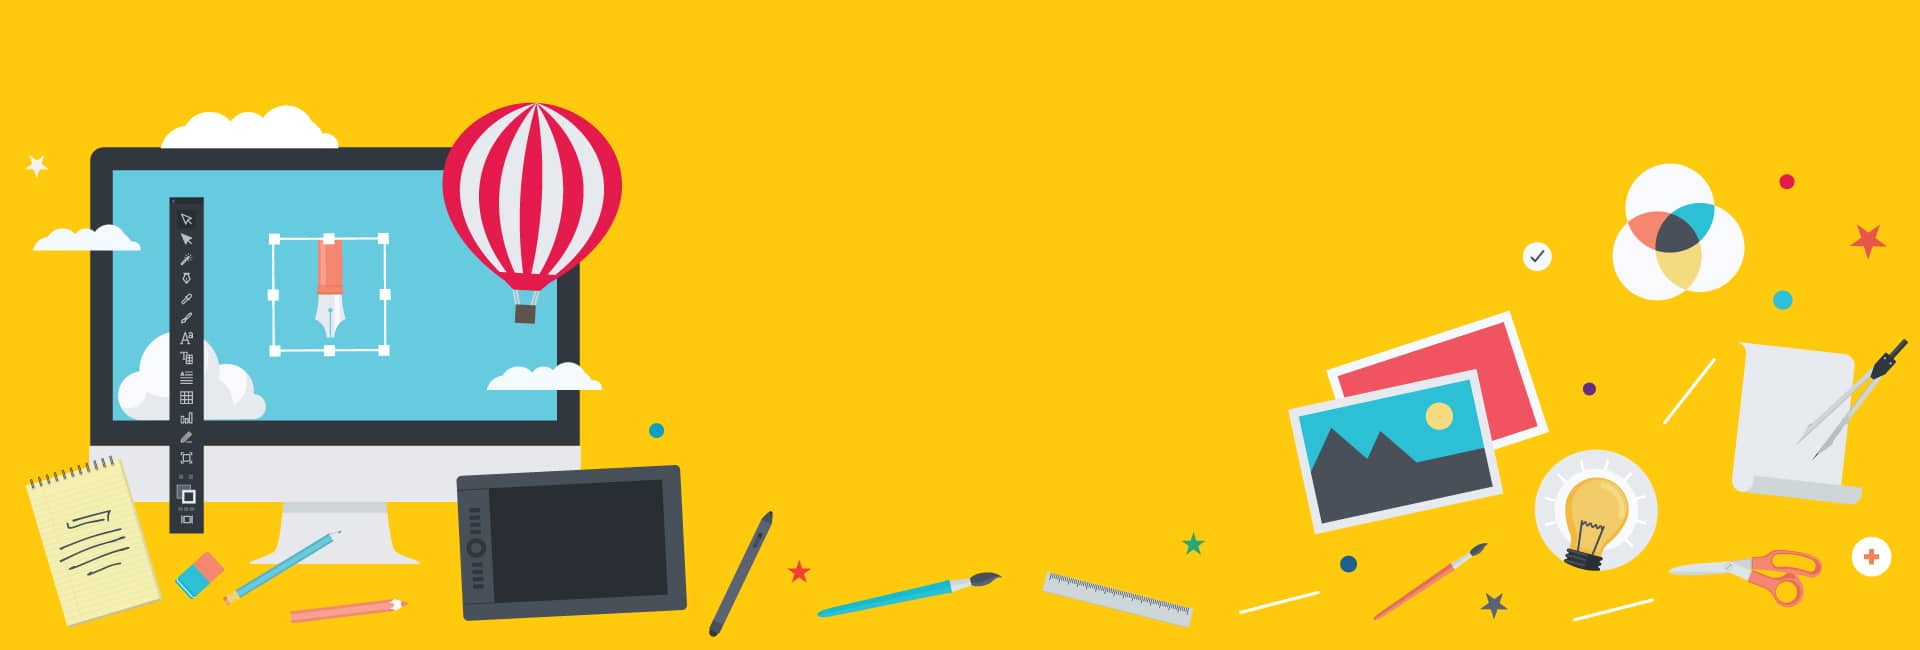 Une illustration comportant un fond jaune avec un ordinateur, une tablette et d'autres éléments.